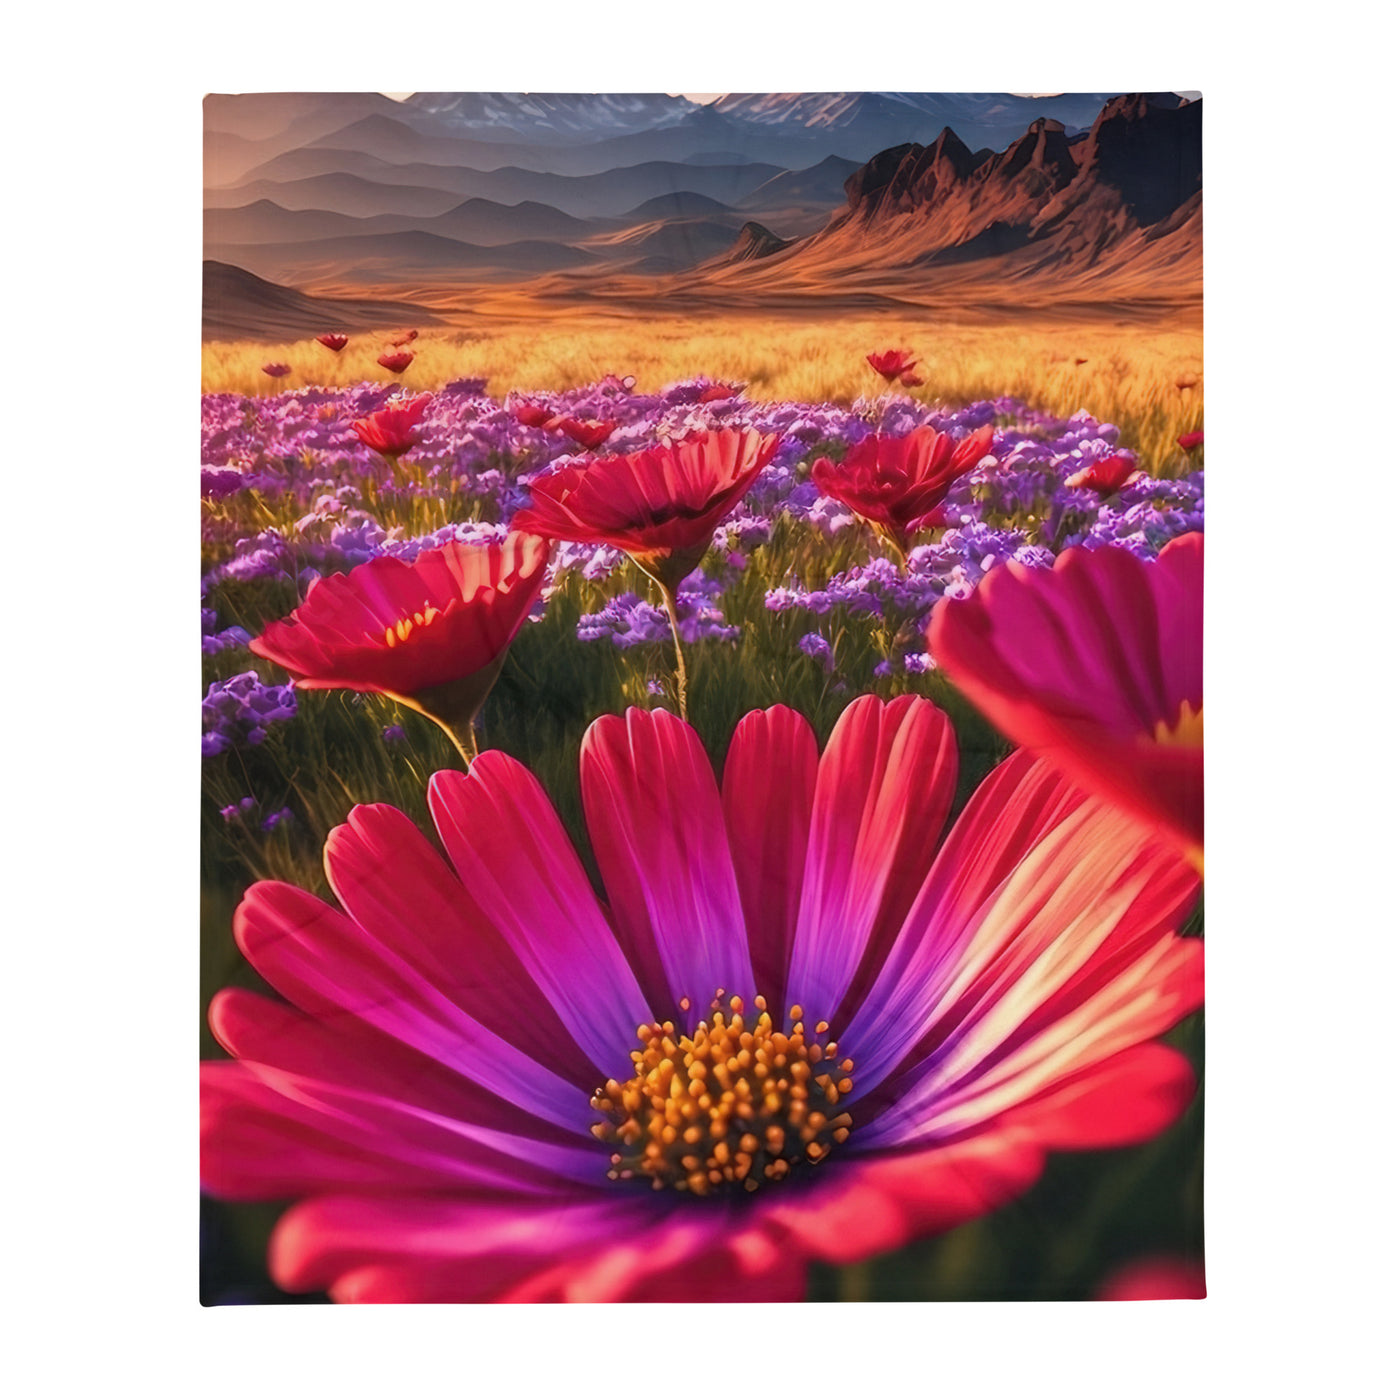 Wünderschöne Blumen und Berge im Hintergrund - Überwurfdecke berge xxx 127 x 152.4 cm